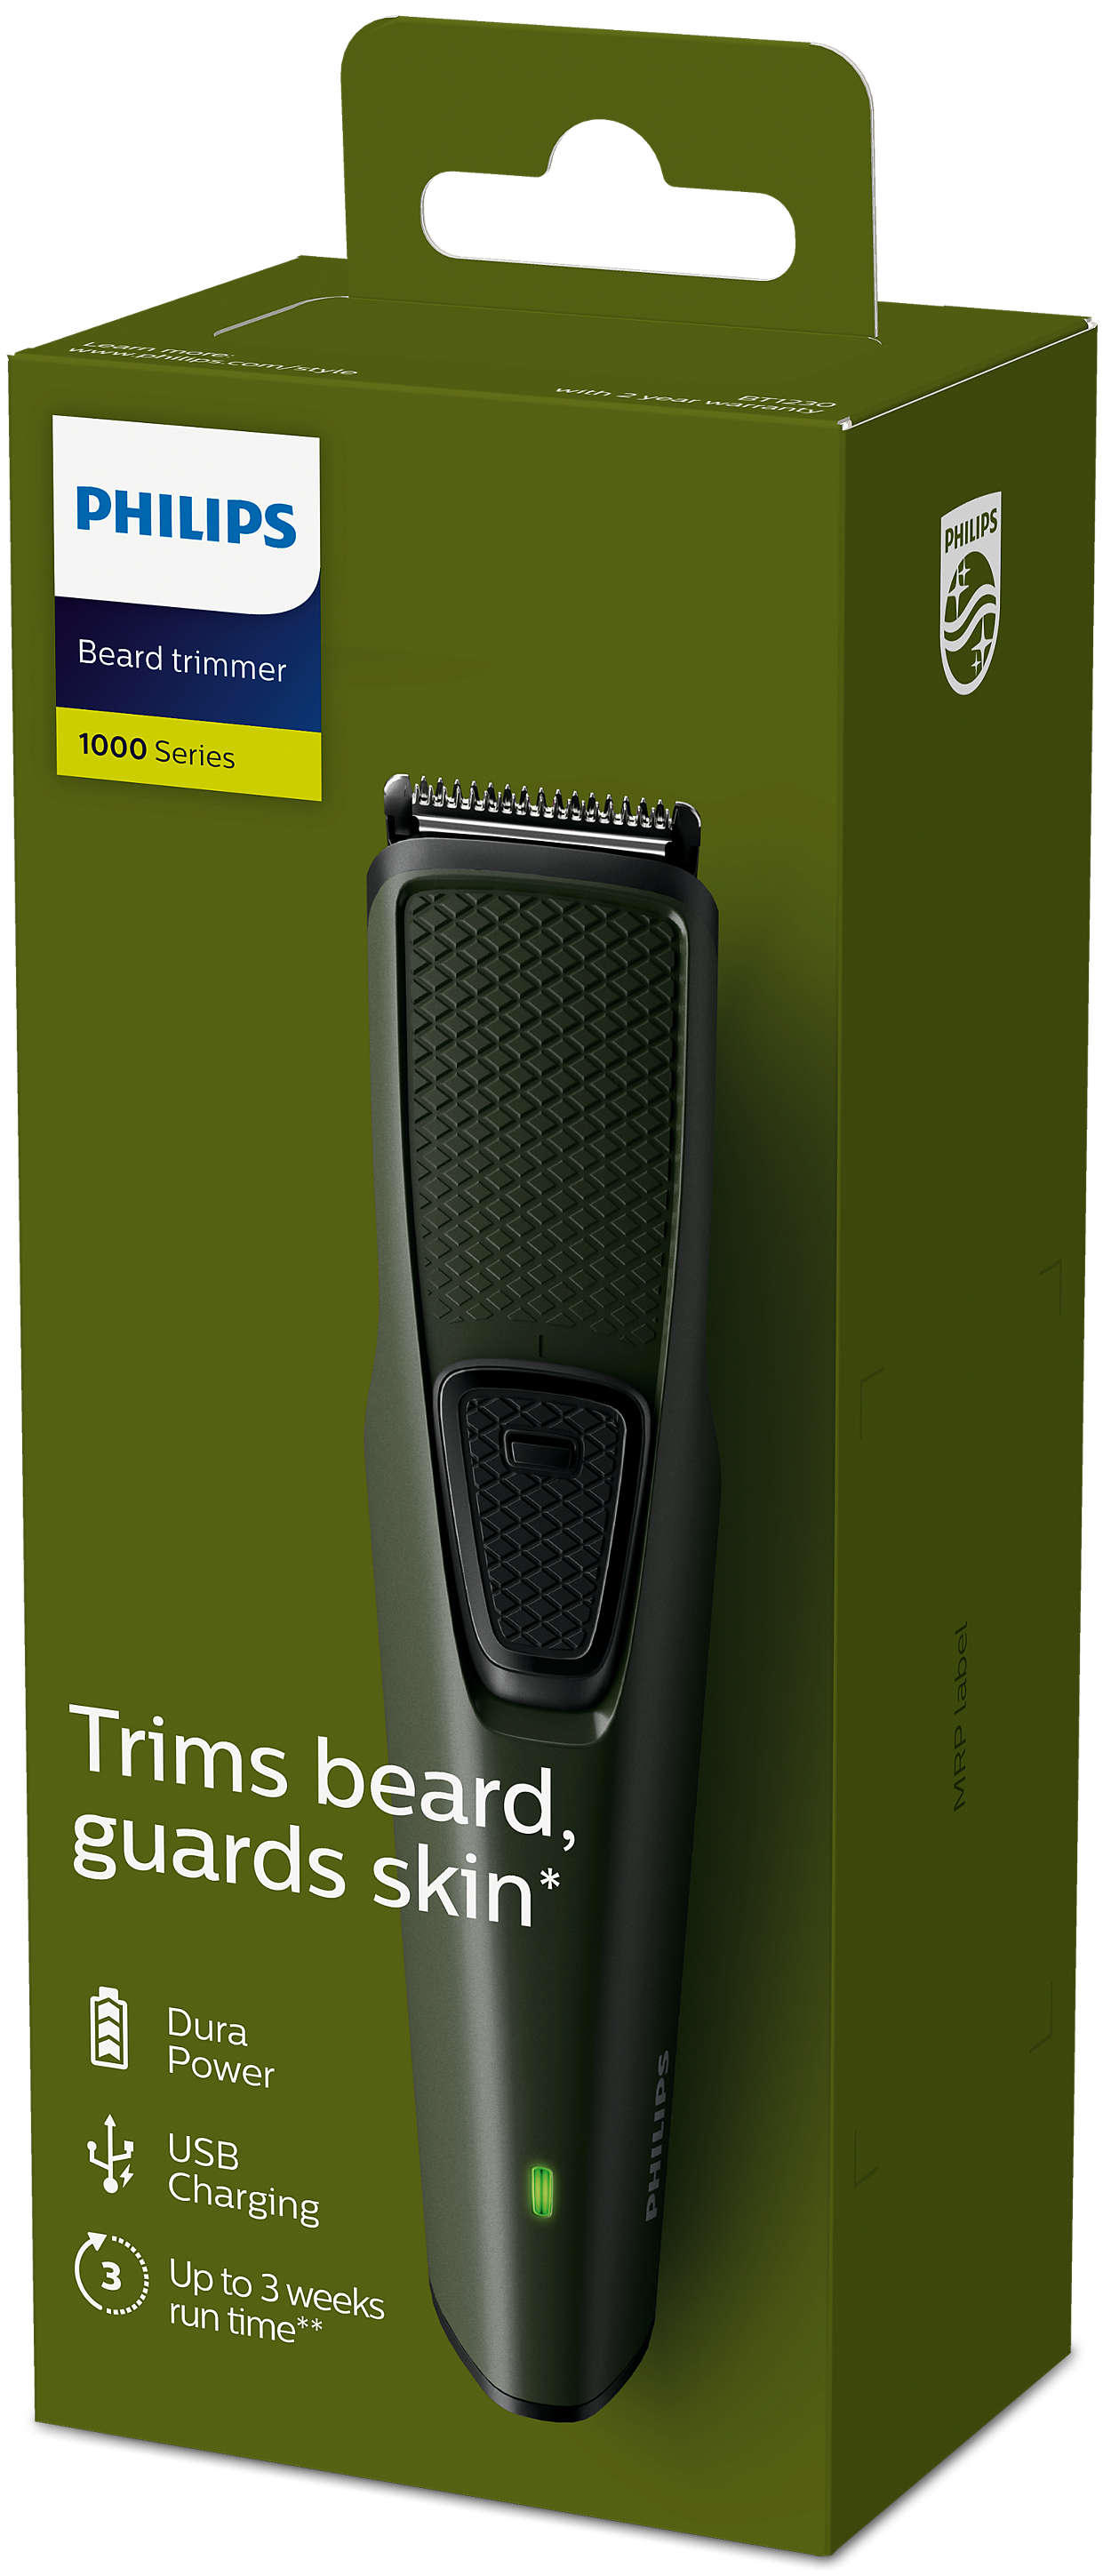 lysere Metropolitan butik Beardtrimmer series 1000 Beard trimmer BT1230/15 | Philips